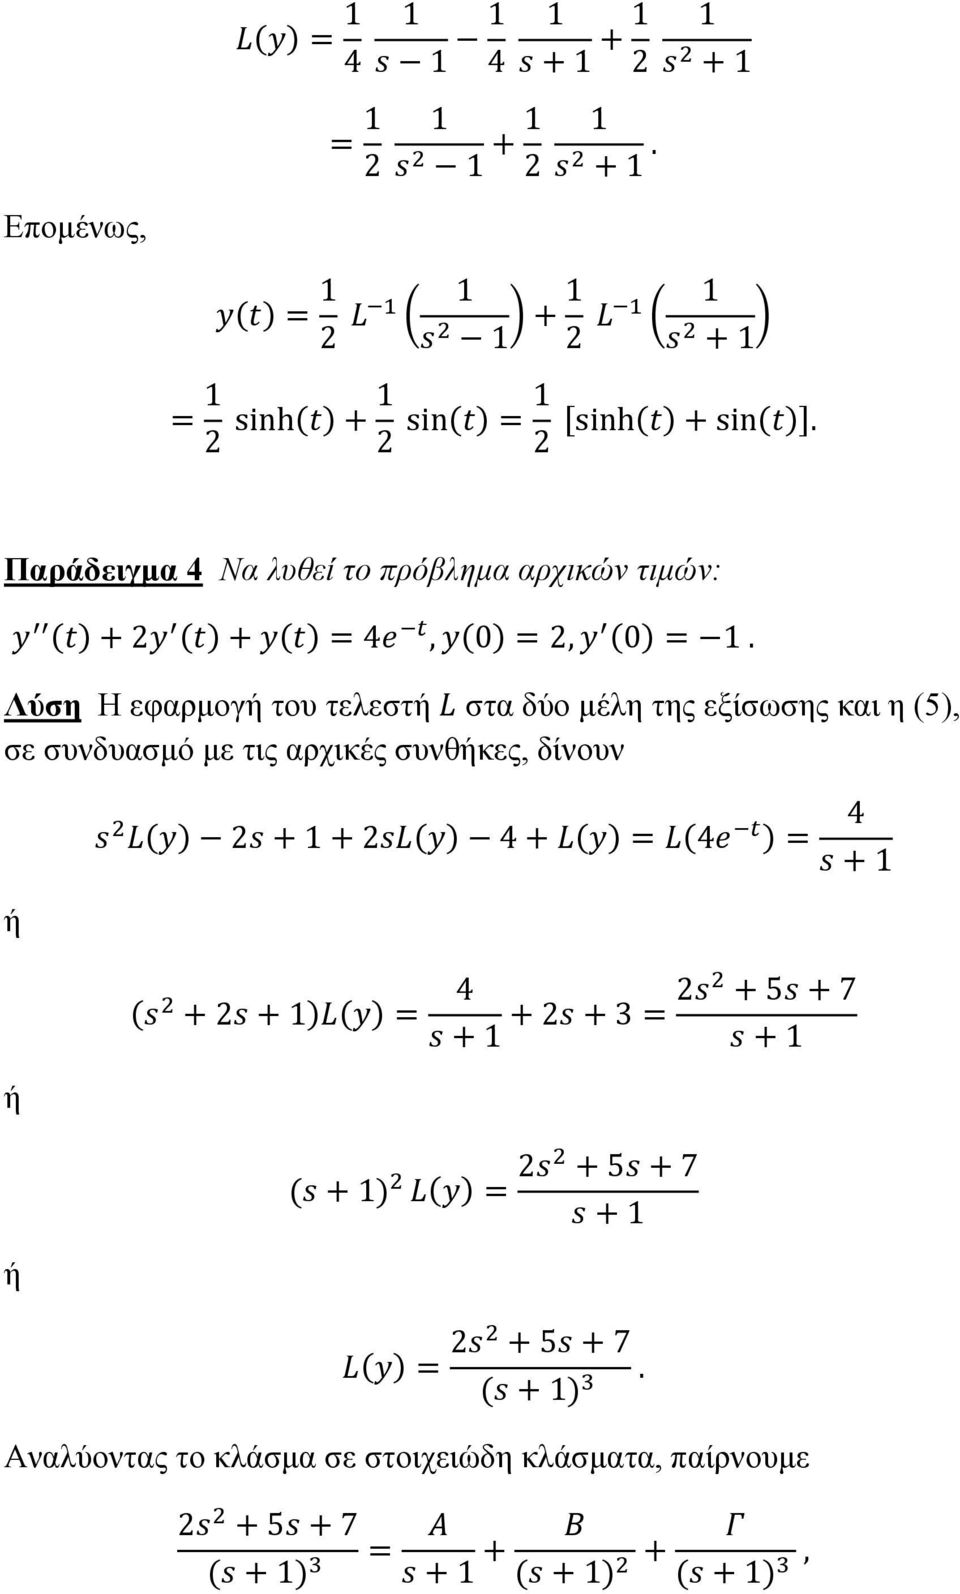 Λύση Η εφαρμογή του τελεστή στα δύο μέλη της εξίσωσης και η (5), σε συνδυασμό με τις αρχικές